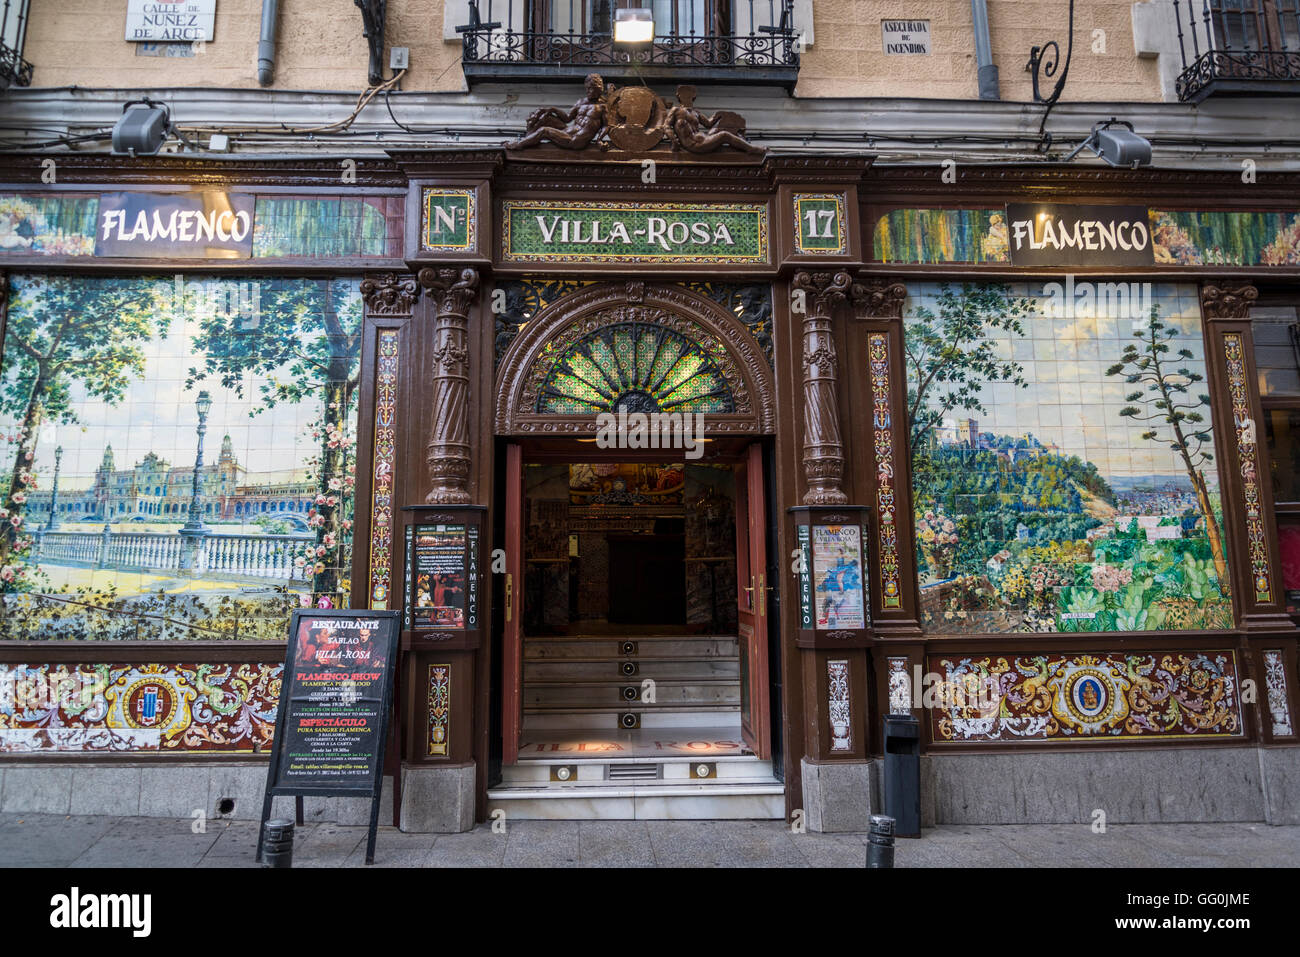 Restaurant traditionnel dans une rue piétonne, dans le quartier de Huertas, Madrid, Espagne Banque D'Images